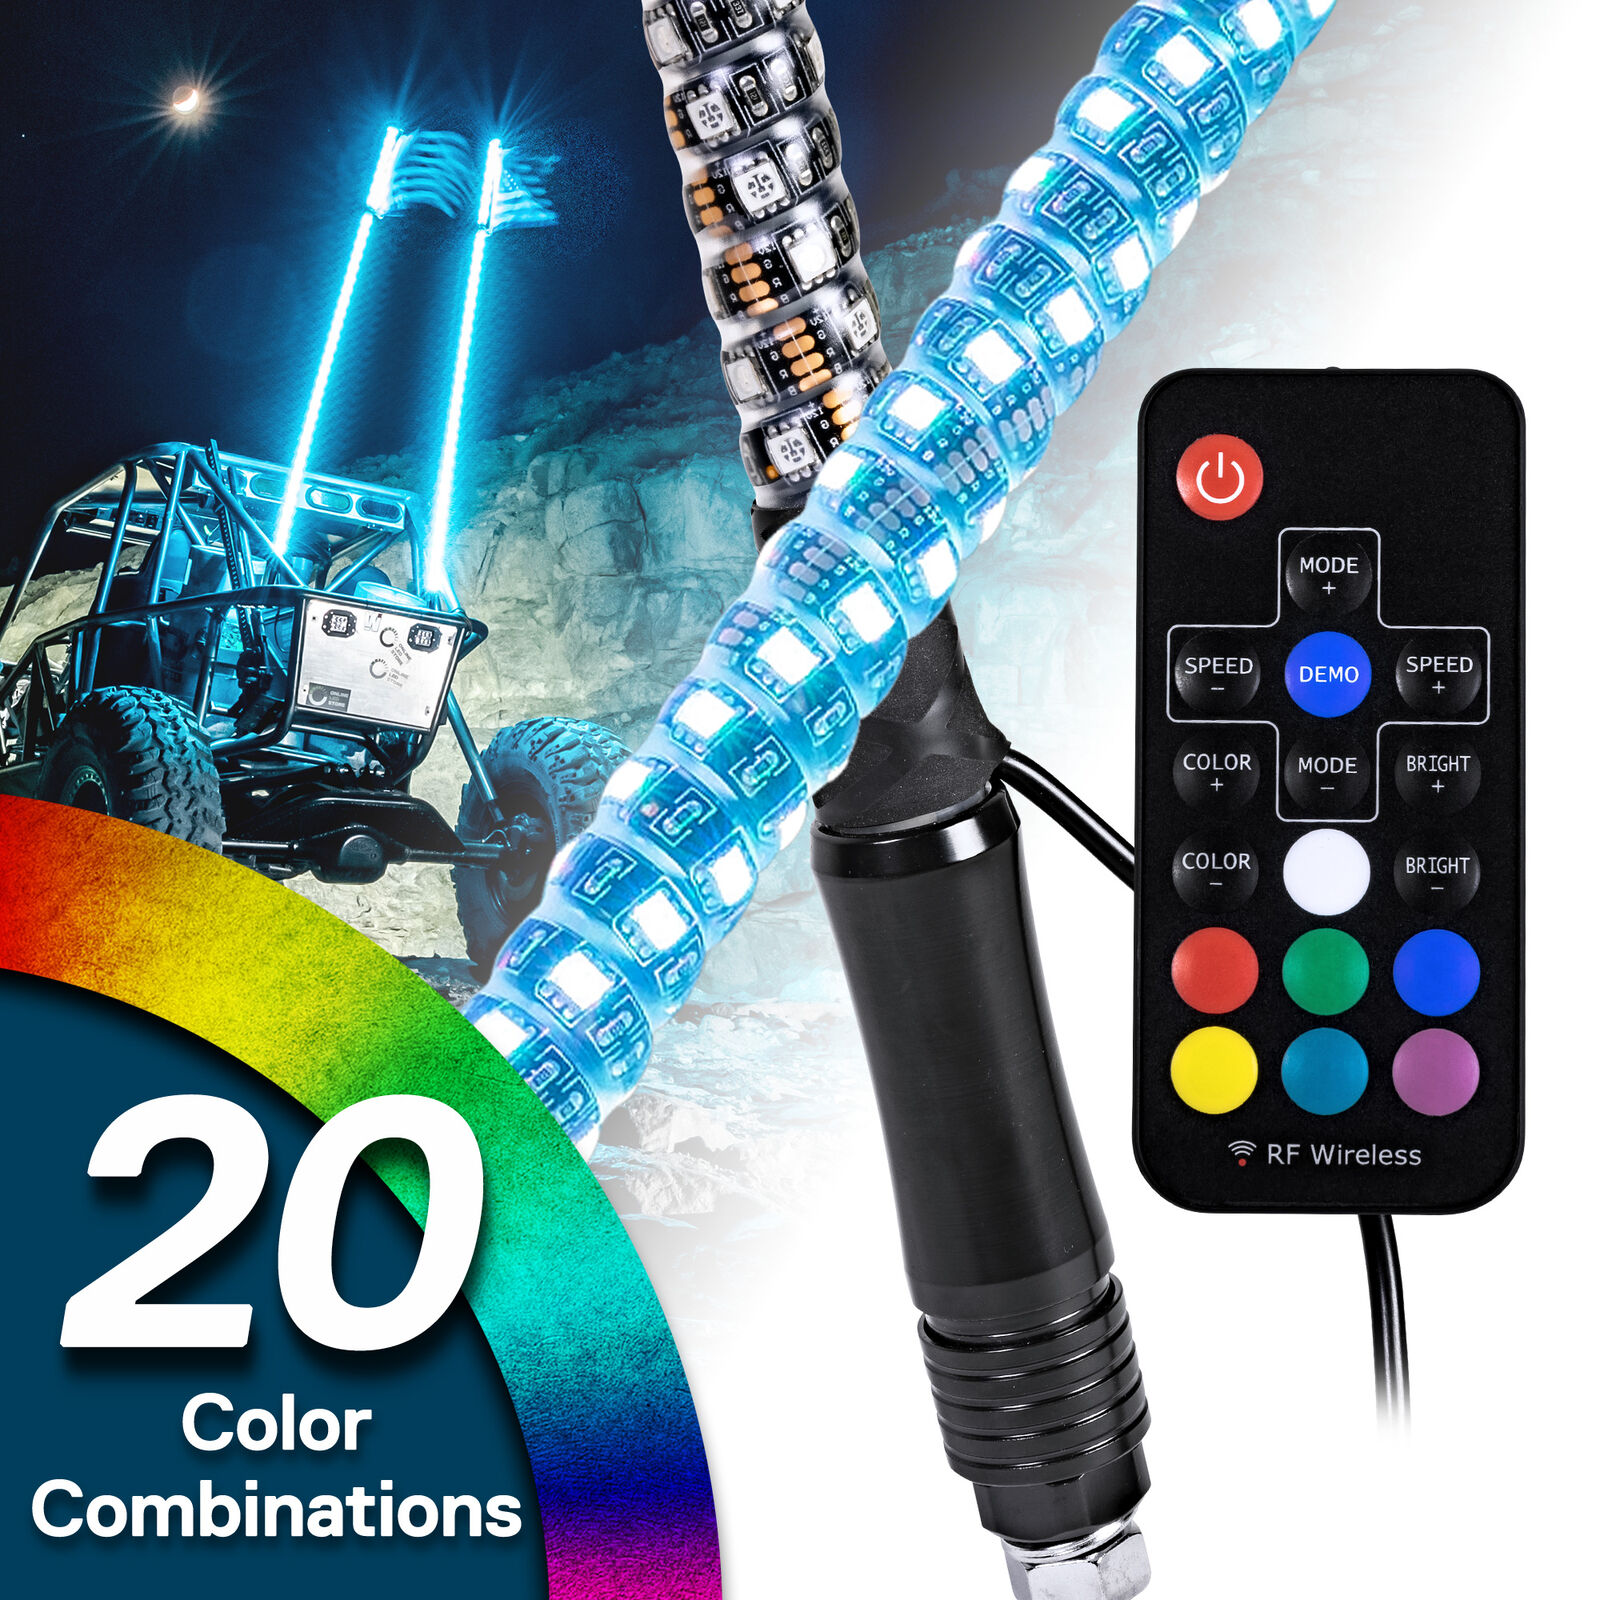 2pc 4ft RGB LED Spiral Whip Light Antenna Flag & Remote for ATV UTV Polaris RZR